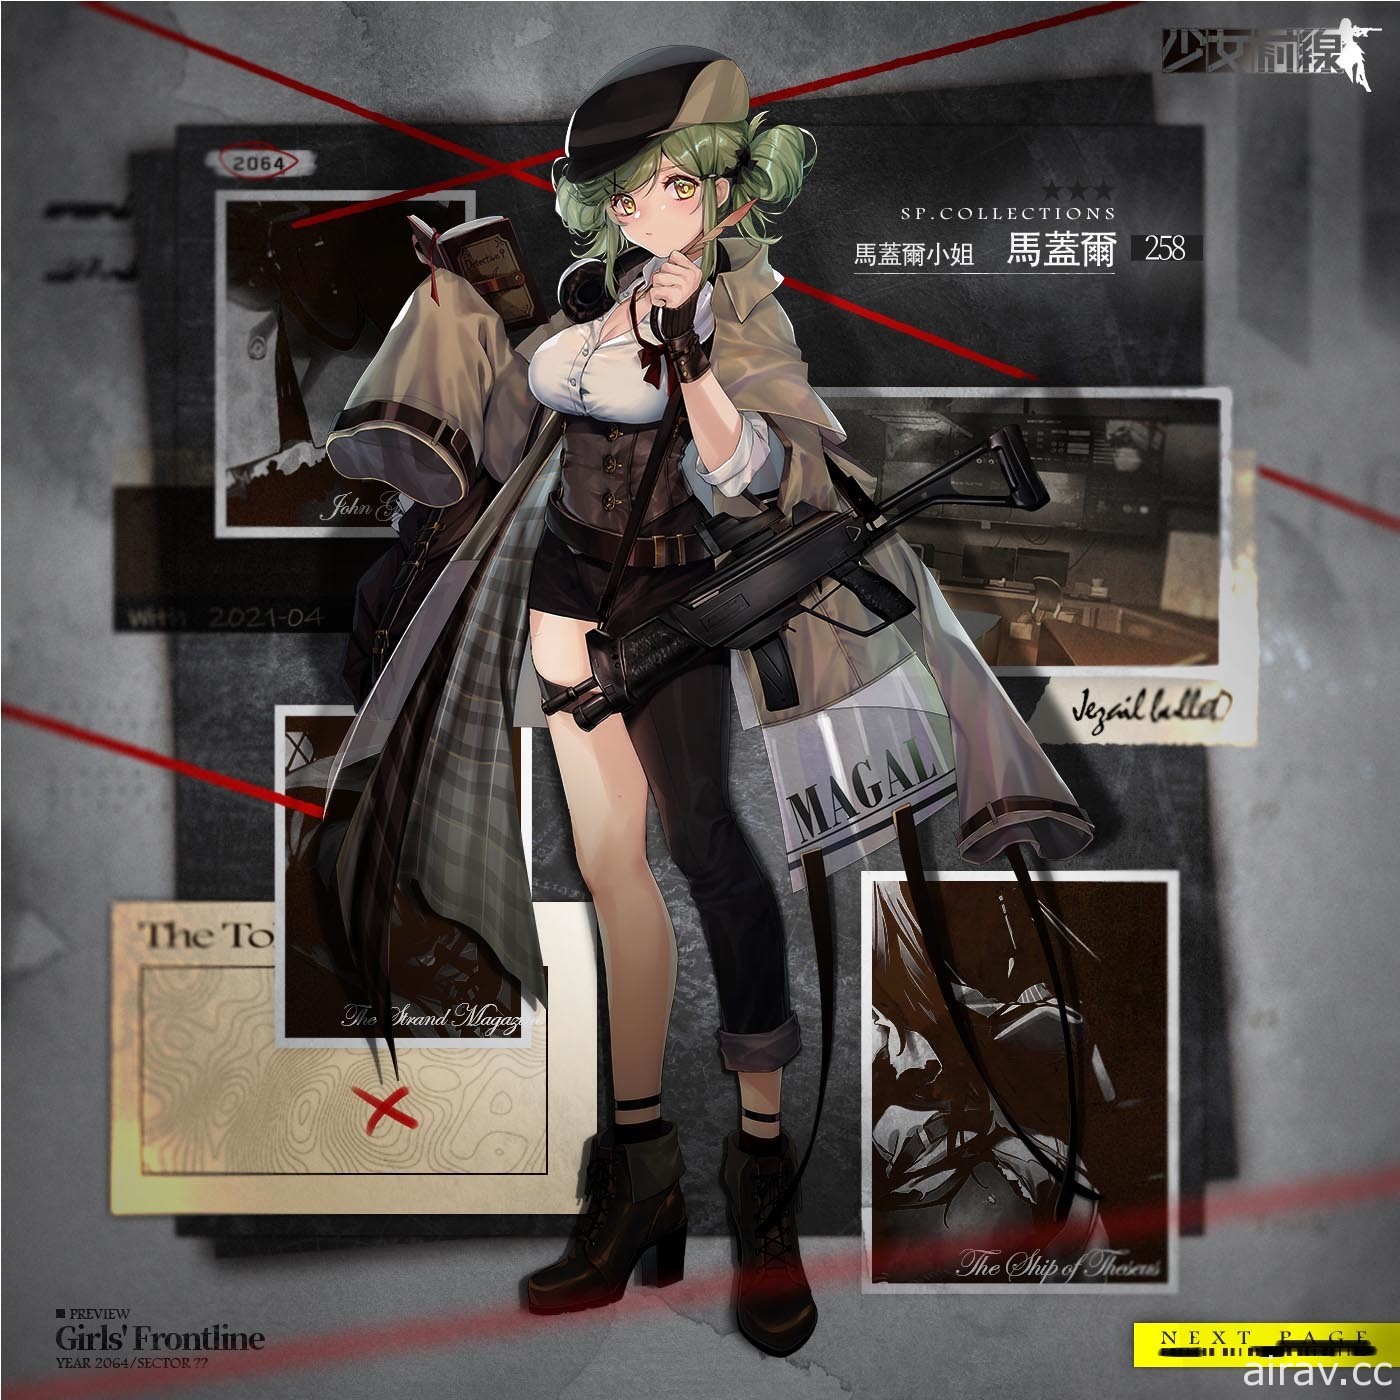 《少女前線》推出偵探主題「基本演繹法」裝扮 同步開放指揮官專屬裝扮